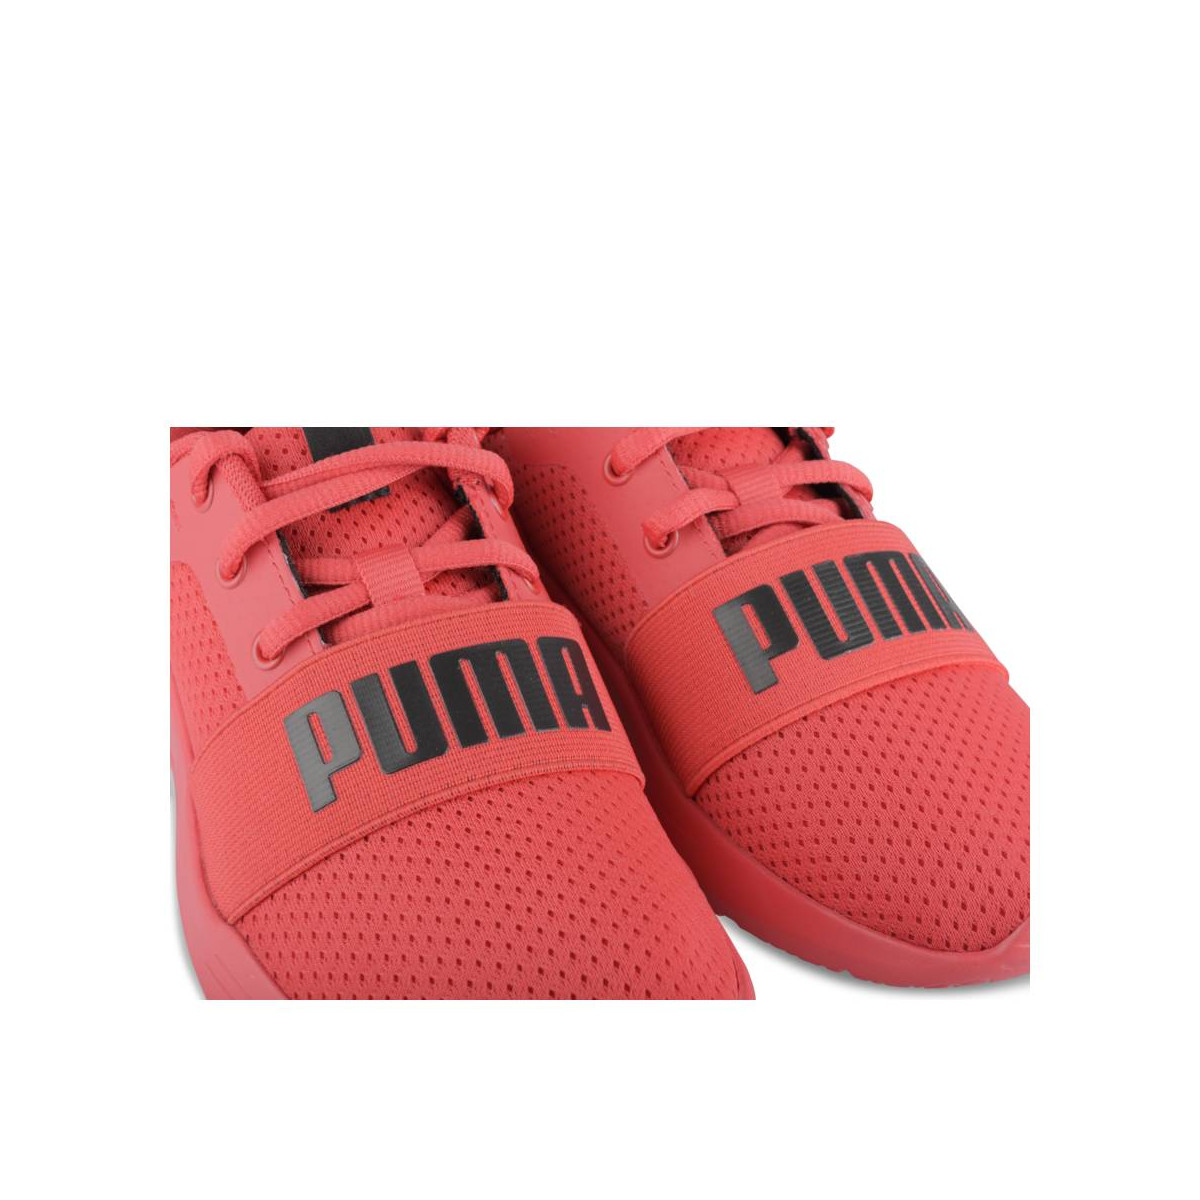 PUMA Wired Running Shoes Black UAE | Dubai, Abu Dhabi